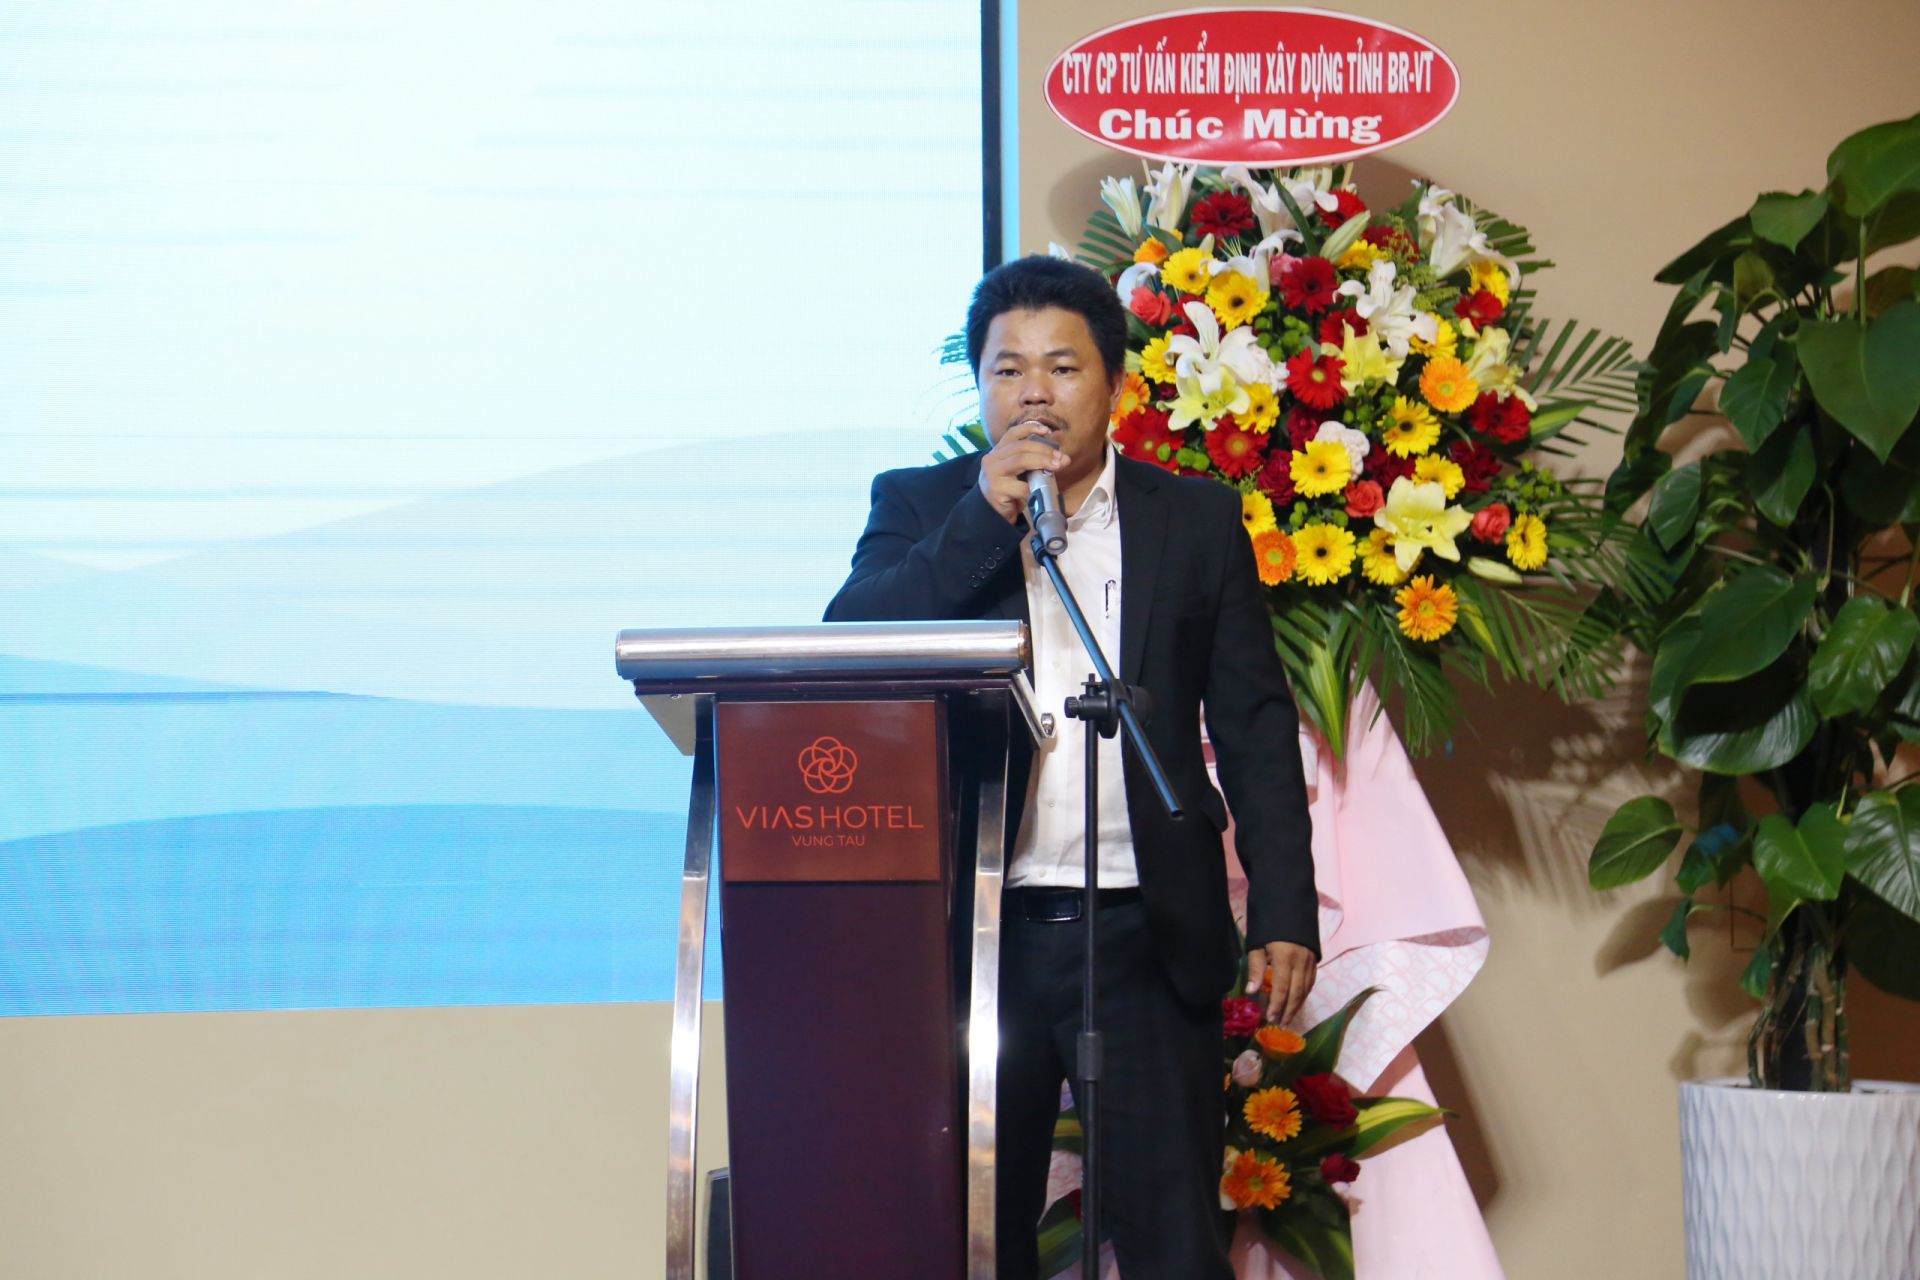 Đại diện doanh nghiệp hội viên mới, ông Trần Quốc Vương - Giám đốc Bệnh viện Sài Gòn - Châu Đức